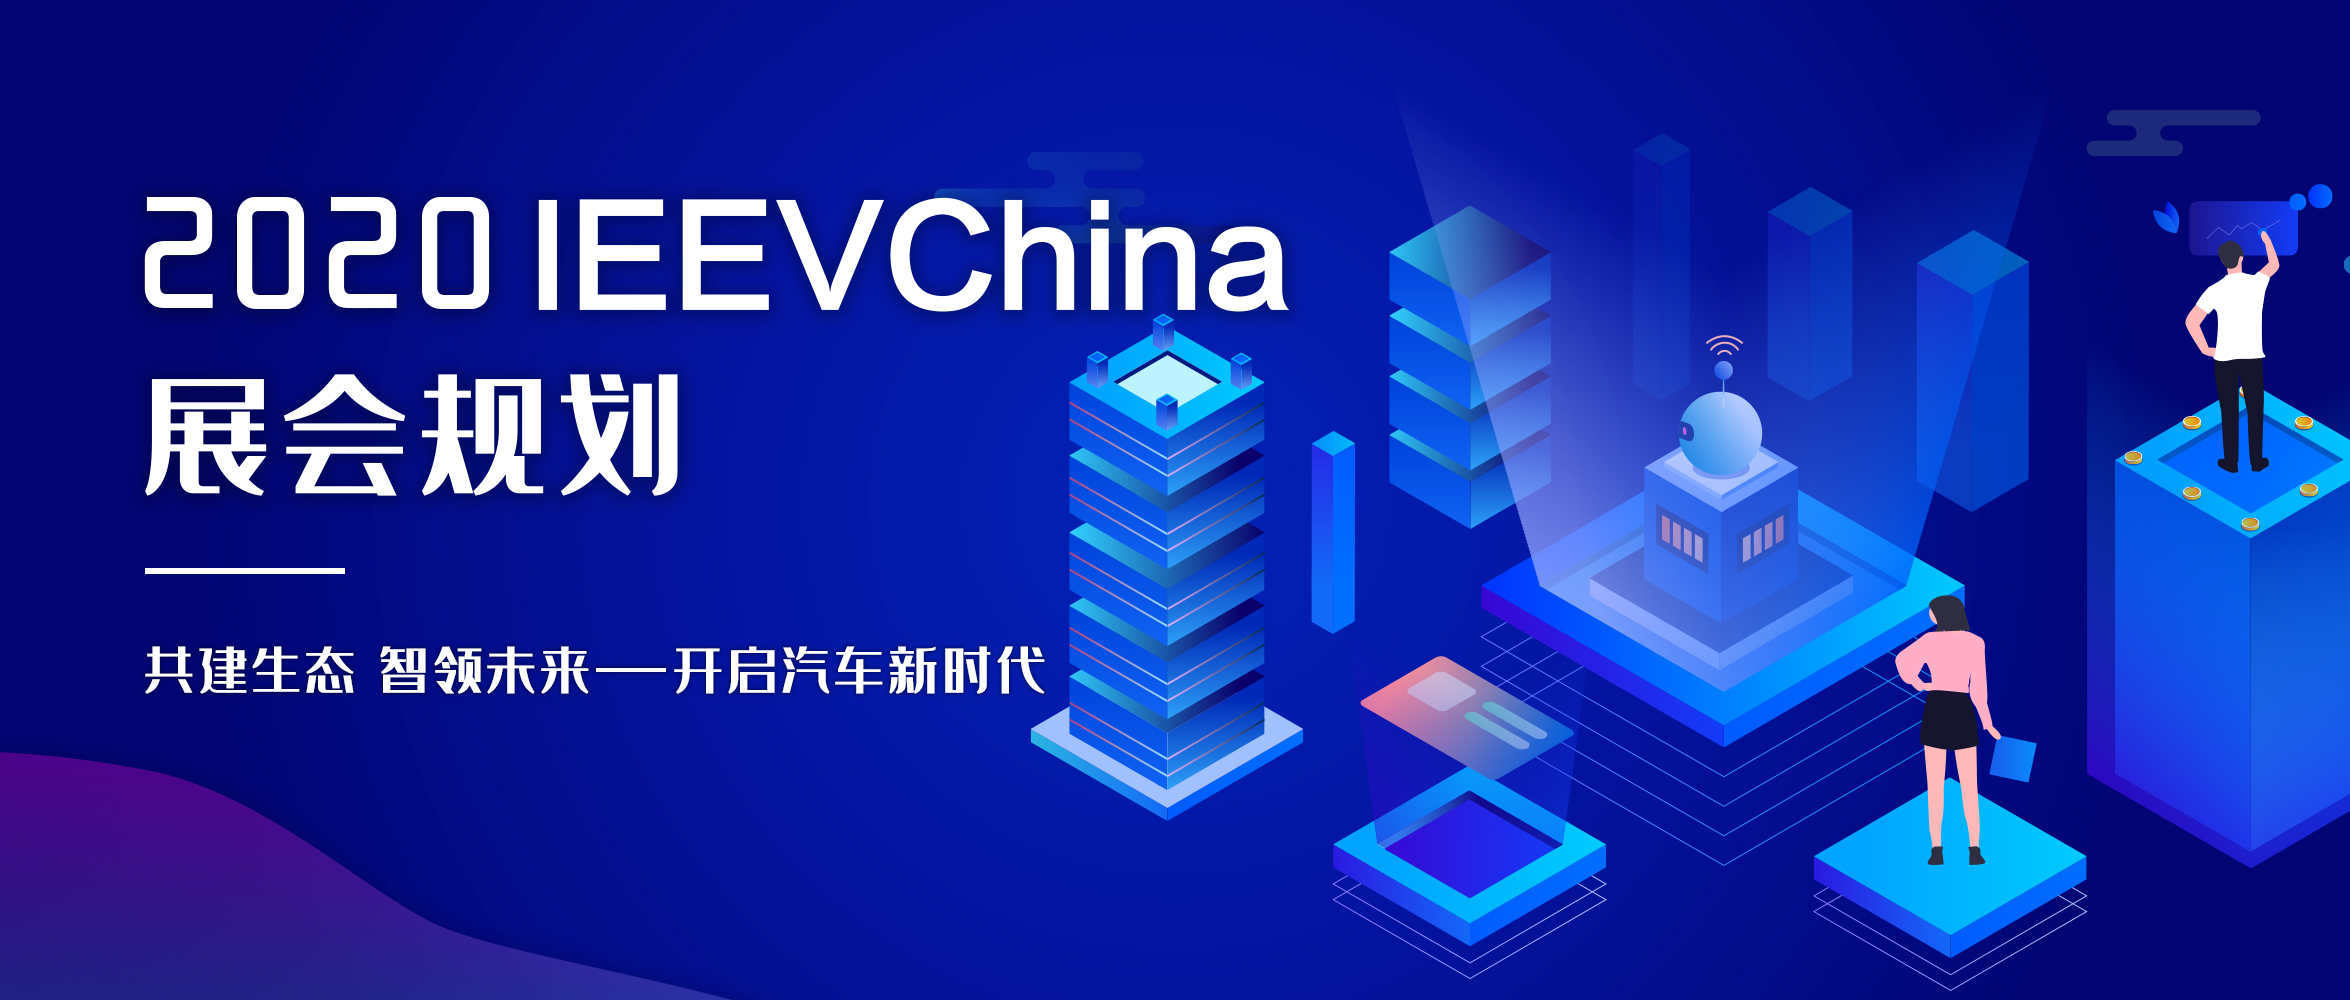 @你 请查收2020年IEEVChina展会规划_世界智能网联汽车大会暨中国国际新能源和智能网联汽车展览会